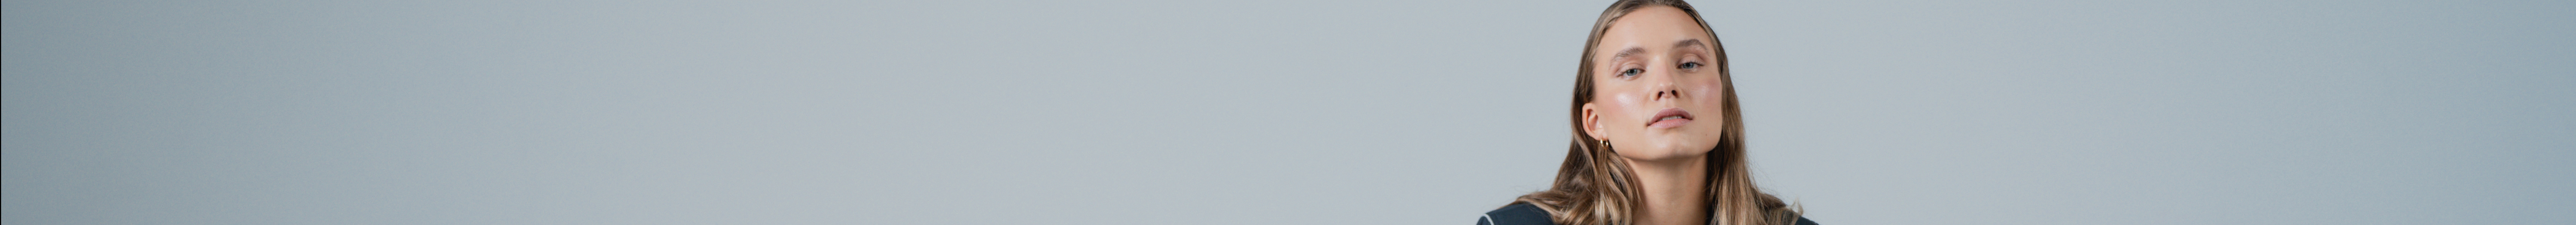 Dominik Cee's profile banner